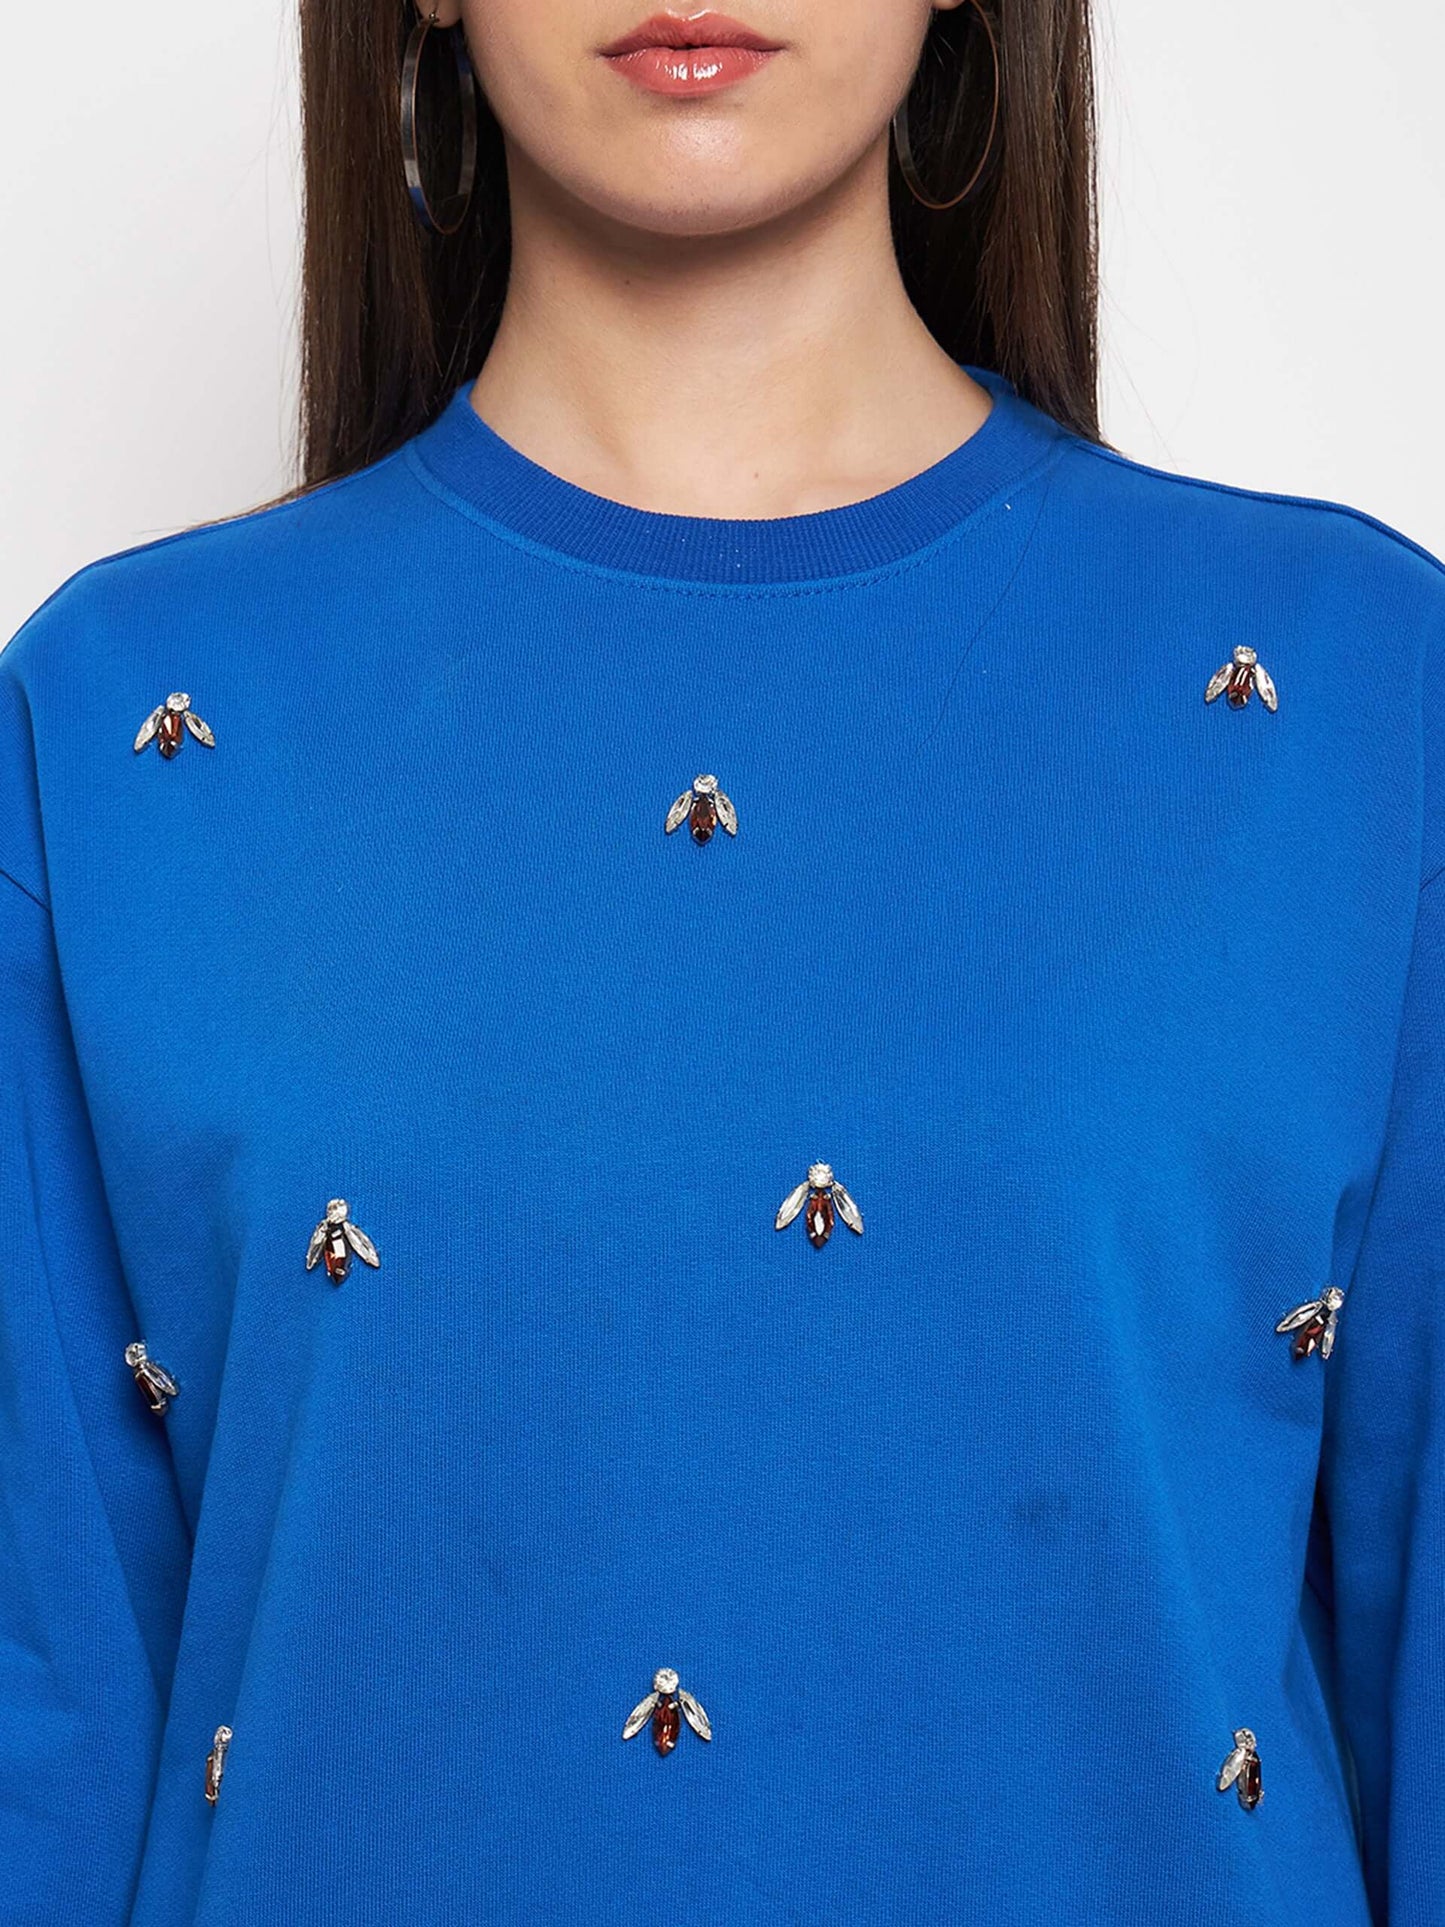 Women's Round Neck Embellished Sweatshirt - Antimony